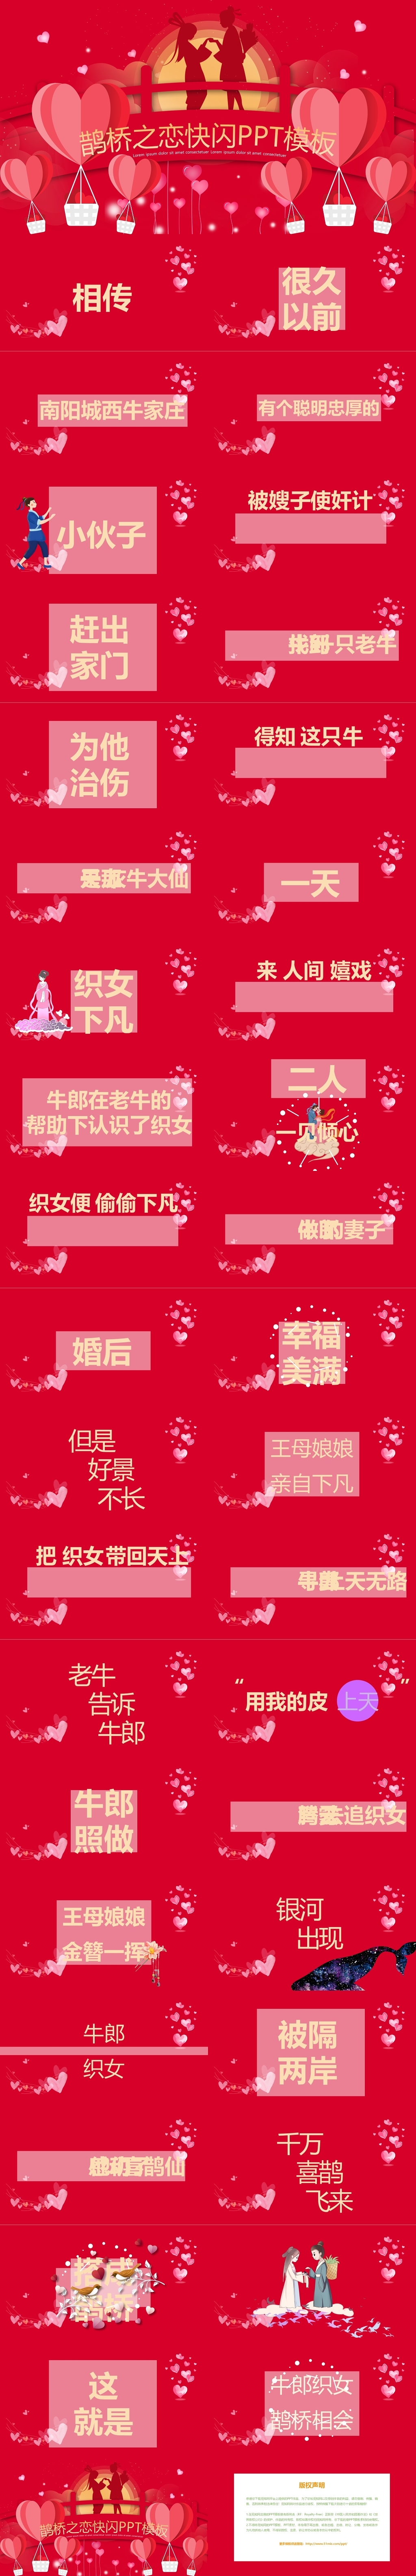 红色温馨鹊桥之恋快闪风七夕情人节节日介绍ppt模板